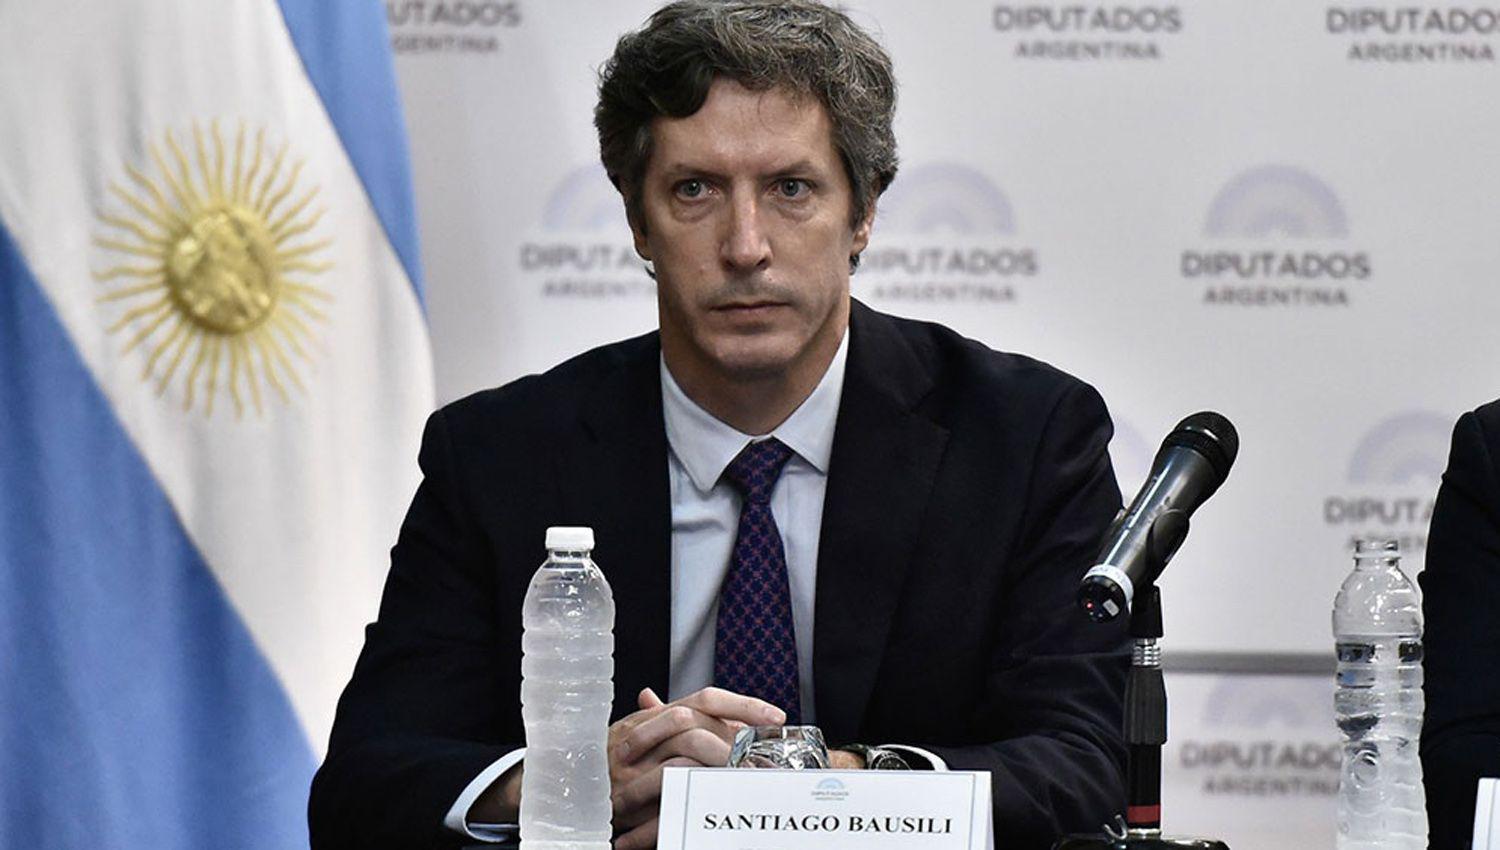 Procesaron al exsecretario de Finanzas de Macri por irregularidades